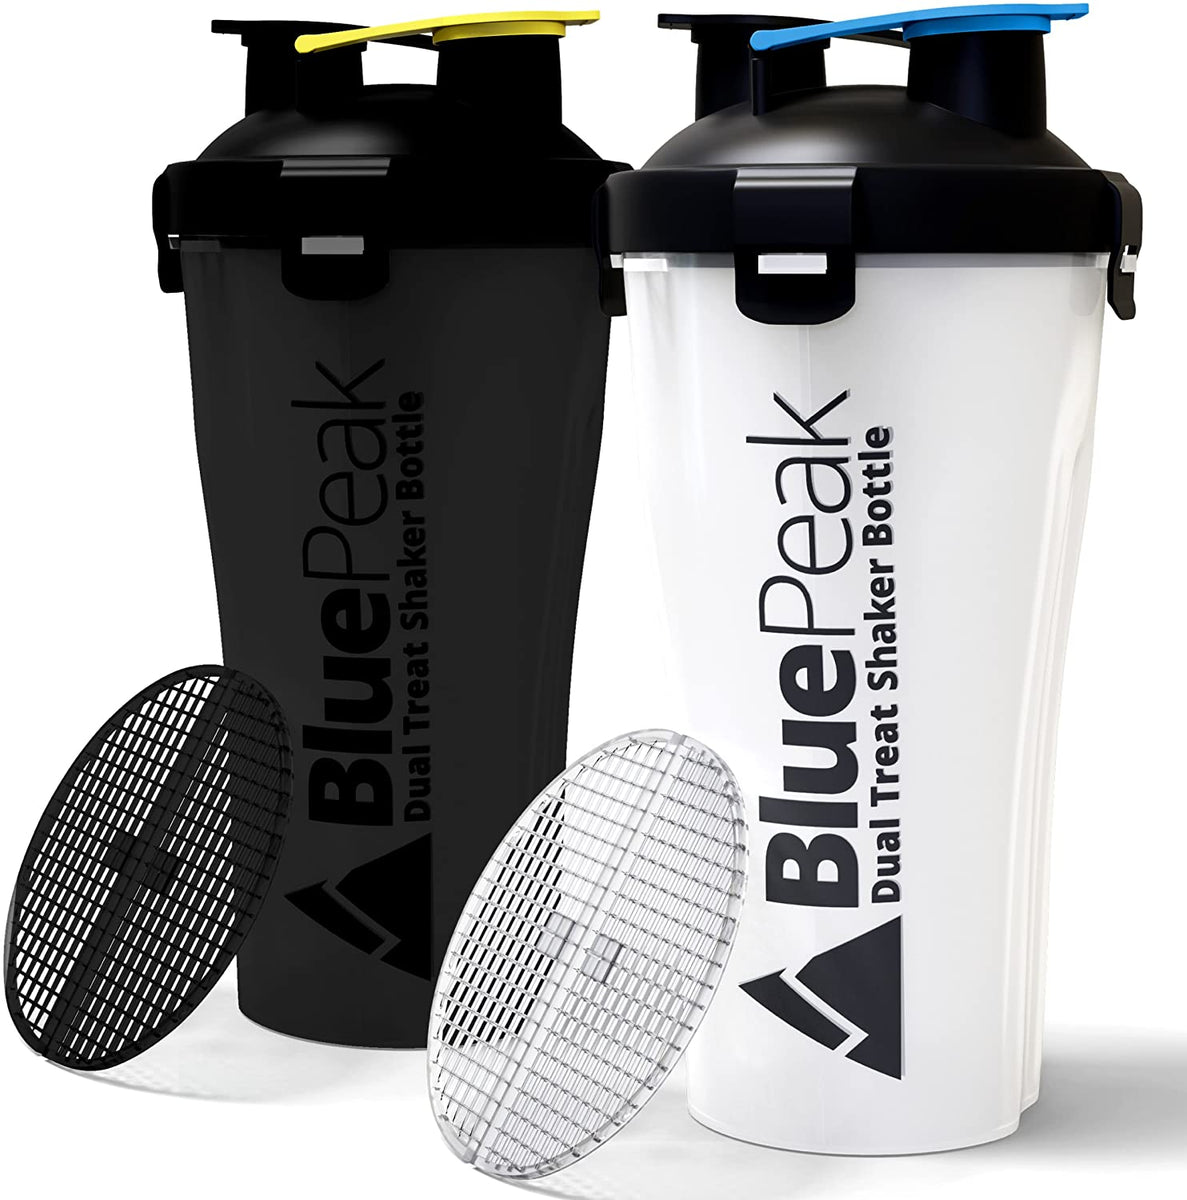 Stacker Shaker Bottle 2-Pack – Bluepeak USA